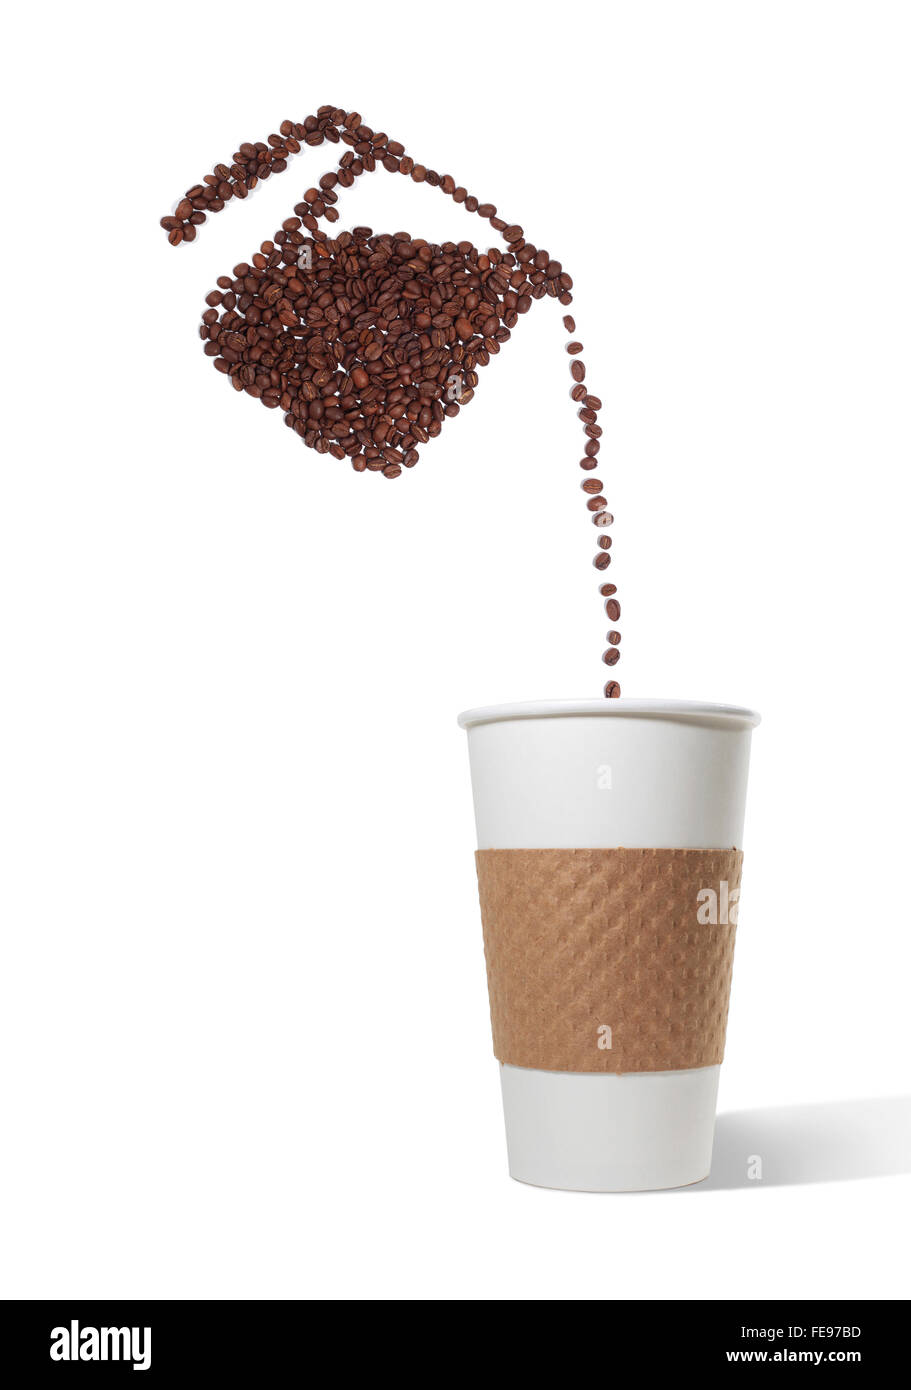 Kaffee Kanne Kaffee Bohnen gießen Bohnen in einen Pappbecher zum mitnehmen auf einem weißen Hintergrund gemacht Stockfoto